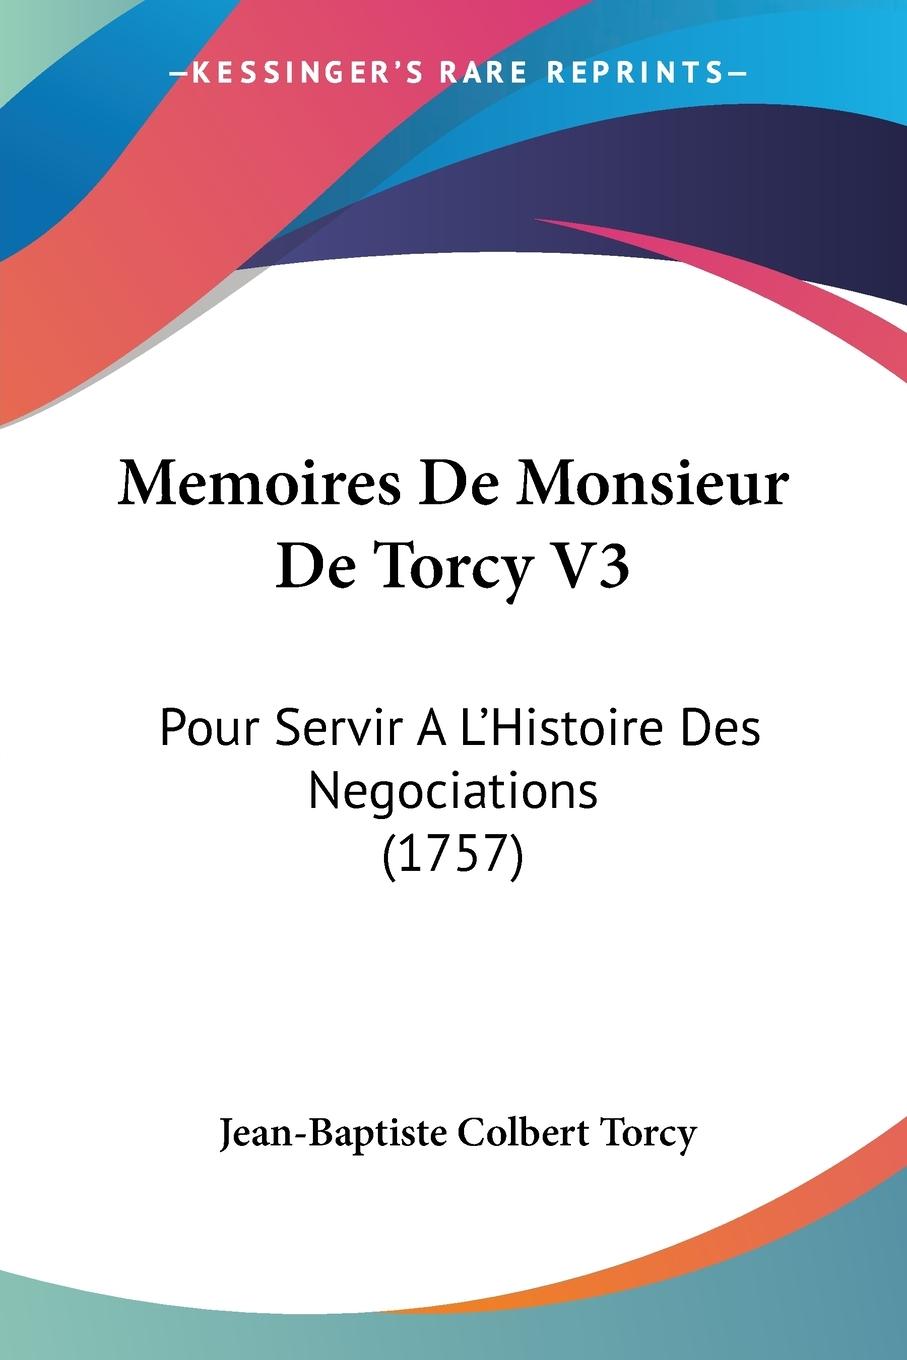 Memoires De Monsieur De Torcy V3 - Torcy, Jean-Baptiste Colbert